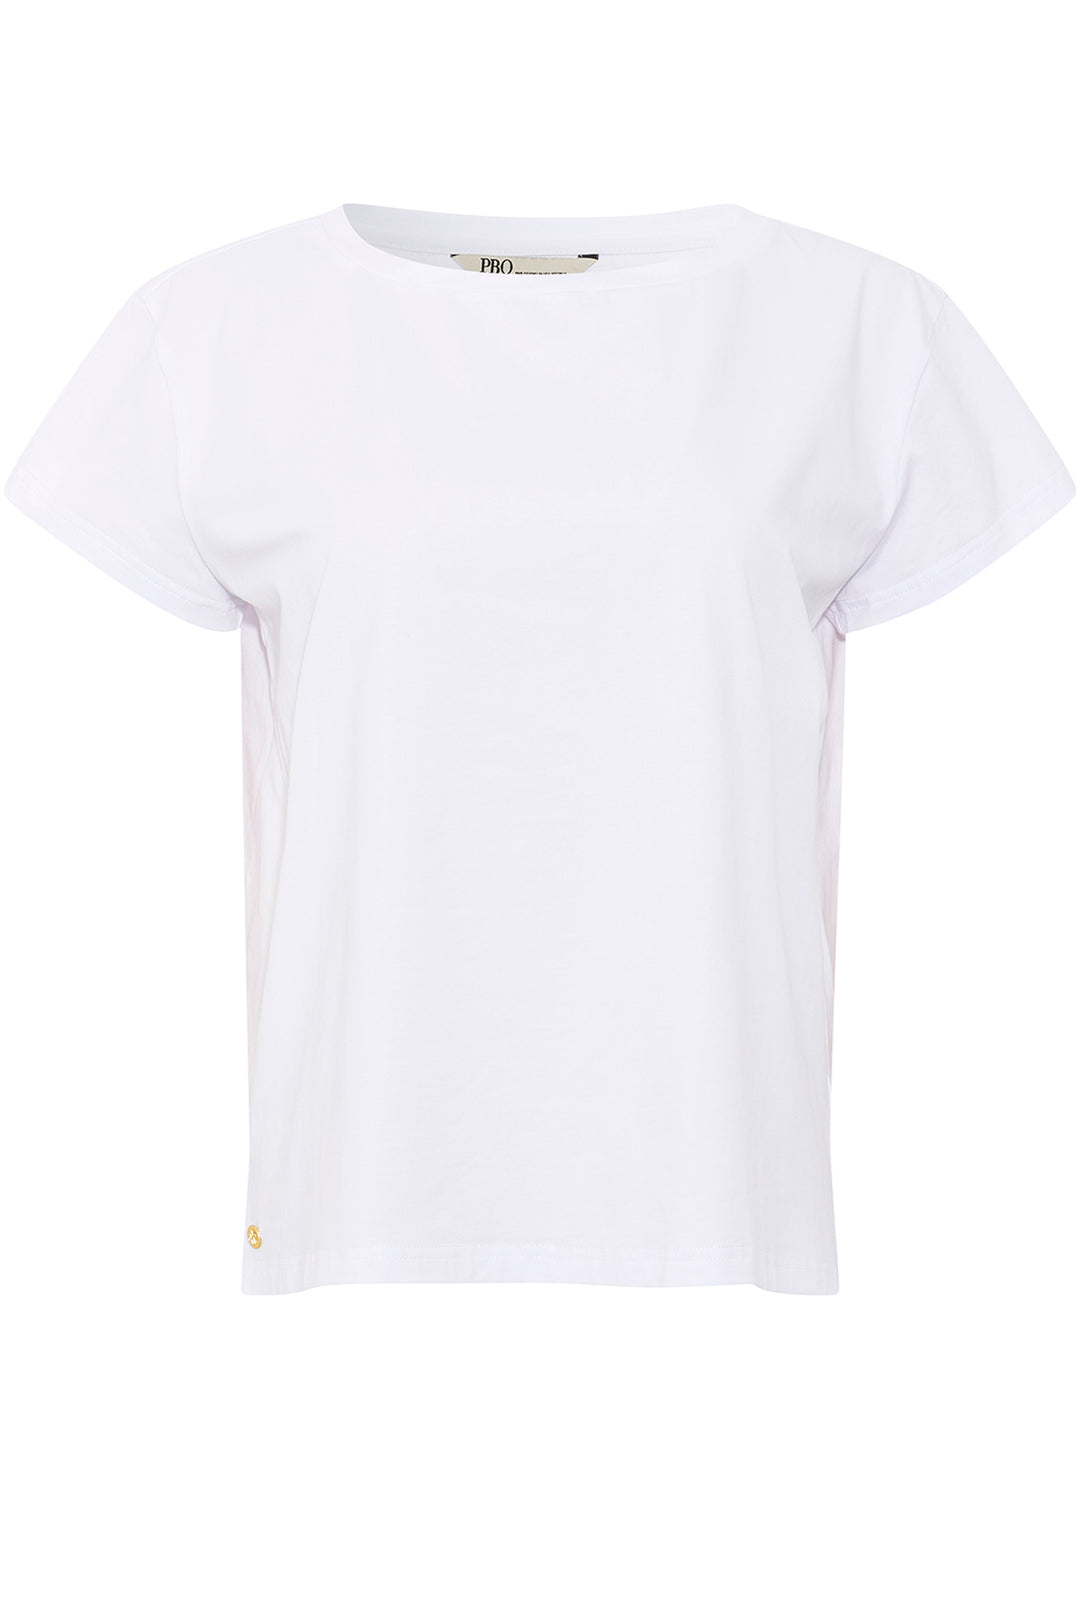 PBO Braveno T-shirt T-SHIRTS 01 White